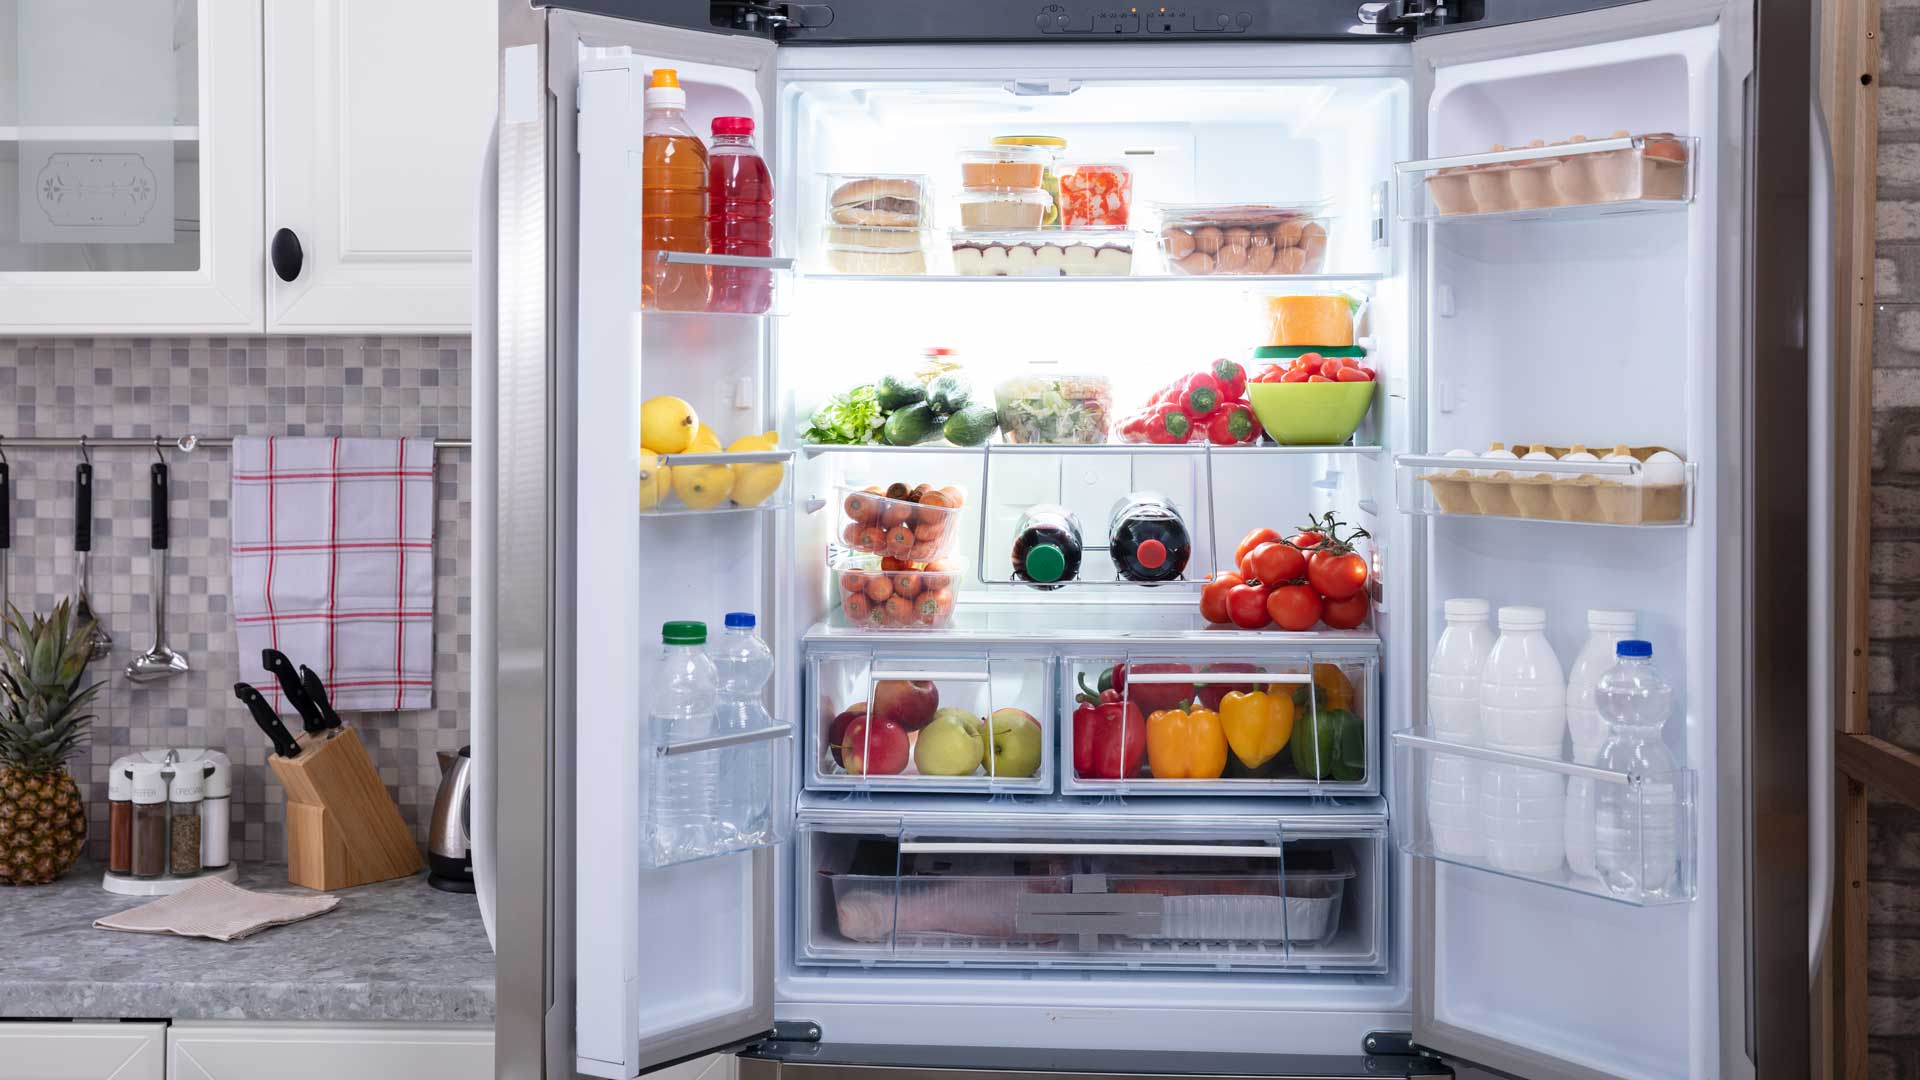 Interior shot of fridge, full of fresh fruits and vegetables